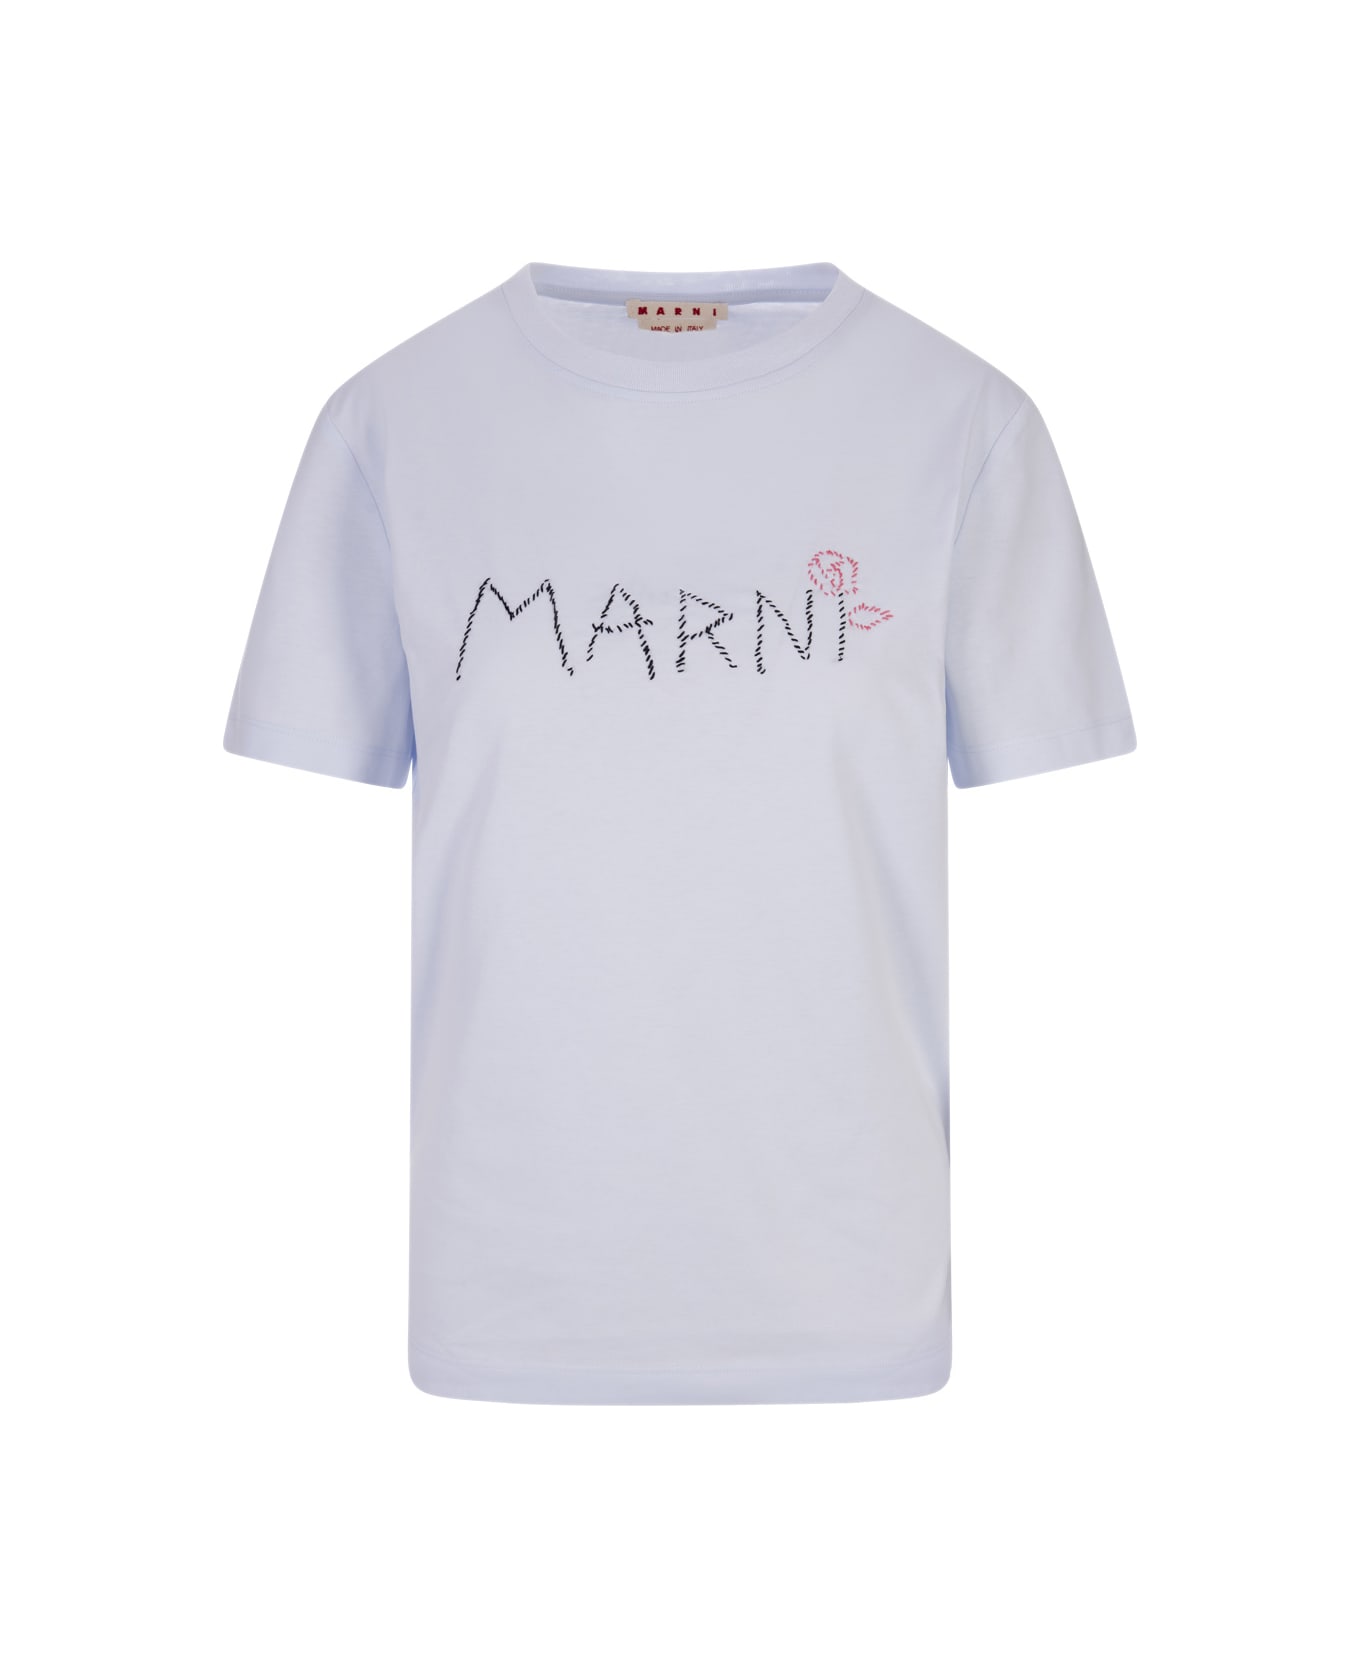 Marni Light Blue T-shirt With Marni Stitching - Blue Tシャツ